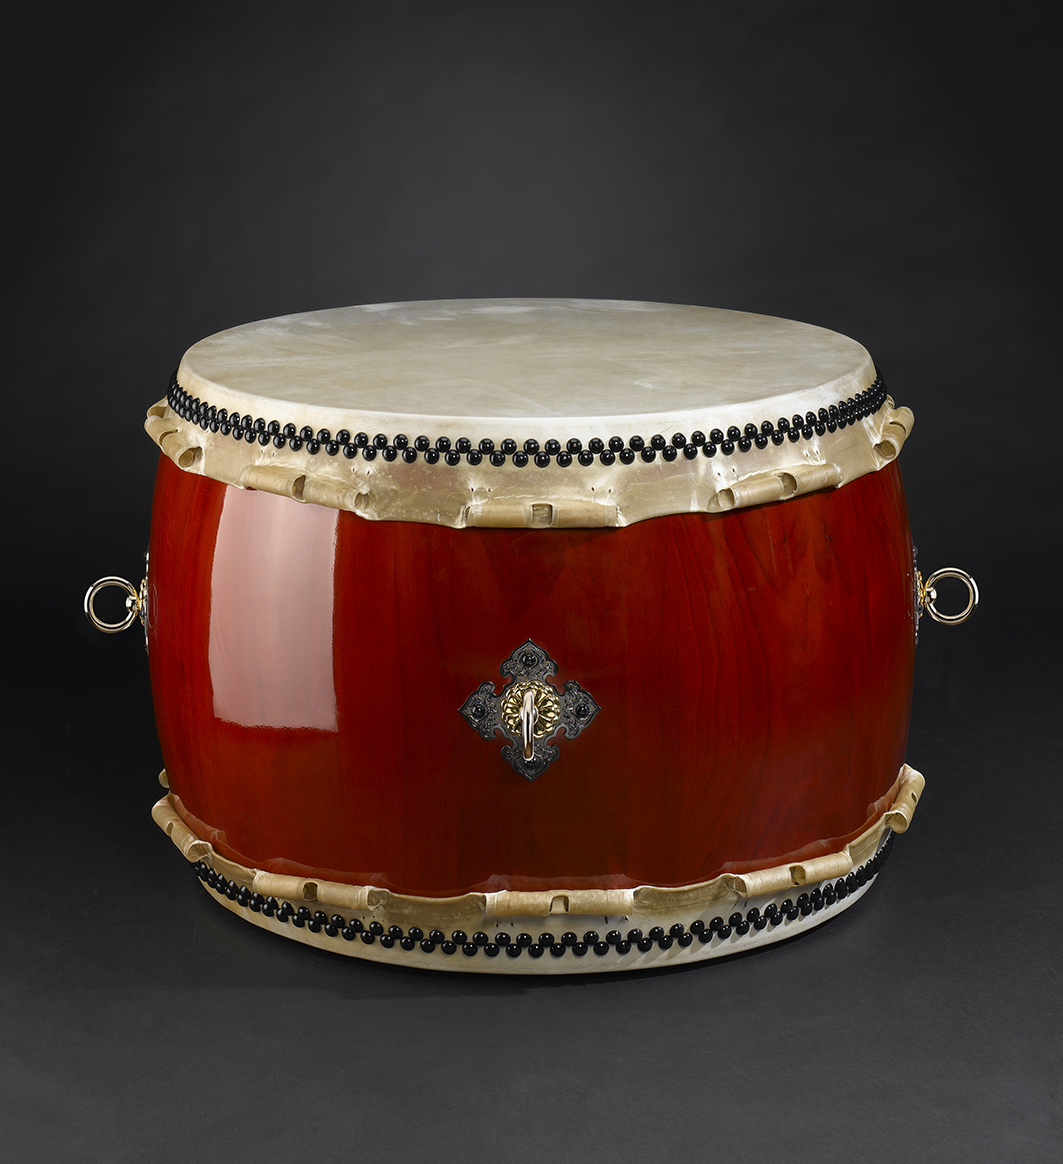 O-Hira-Daiko high quality drum Ø90cm / h: 65cm (3.600€)